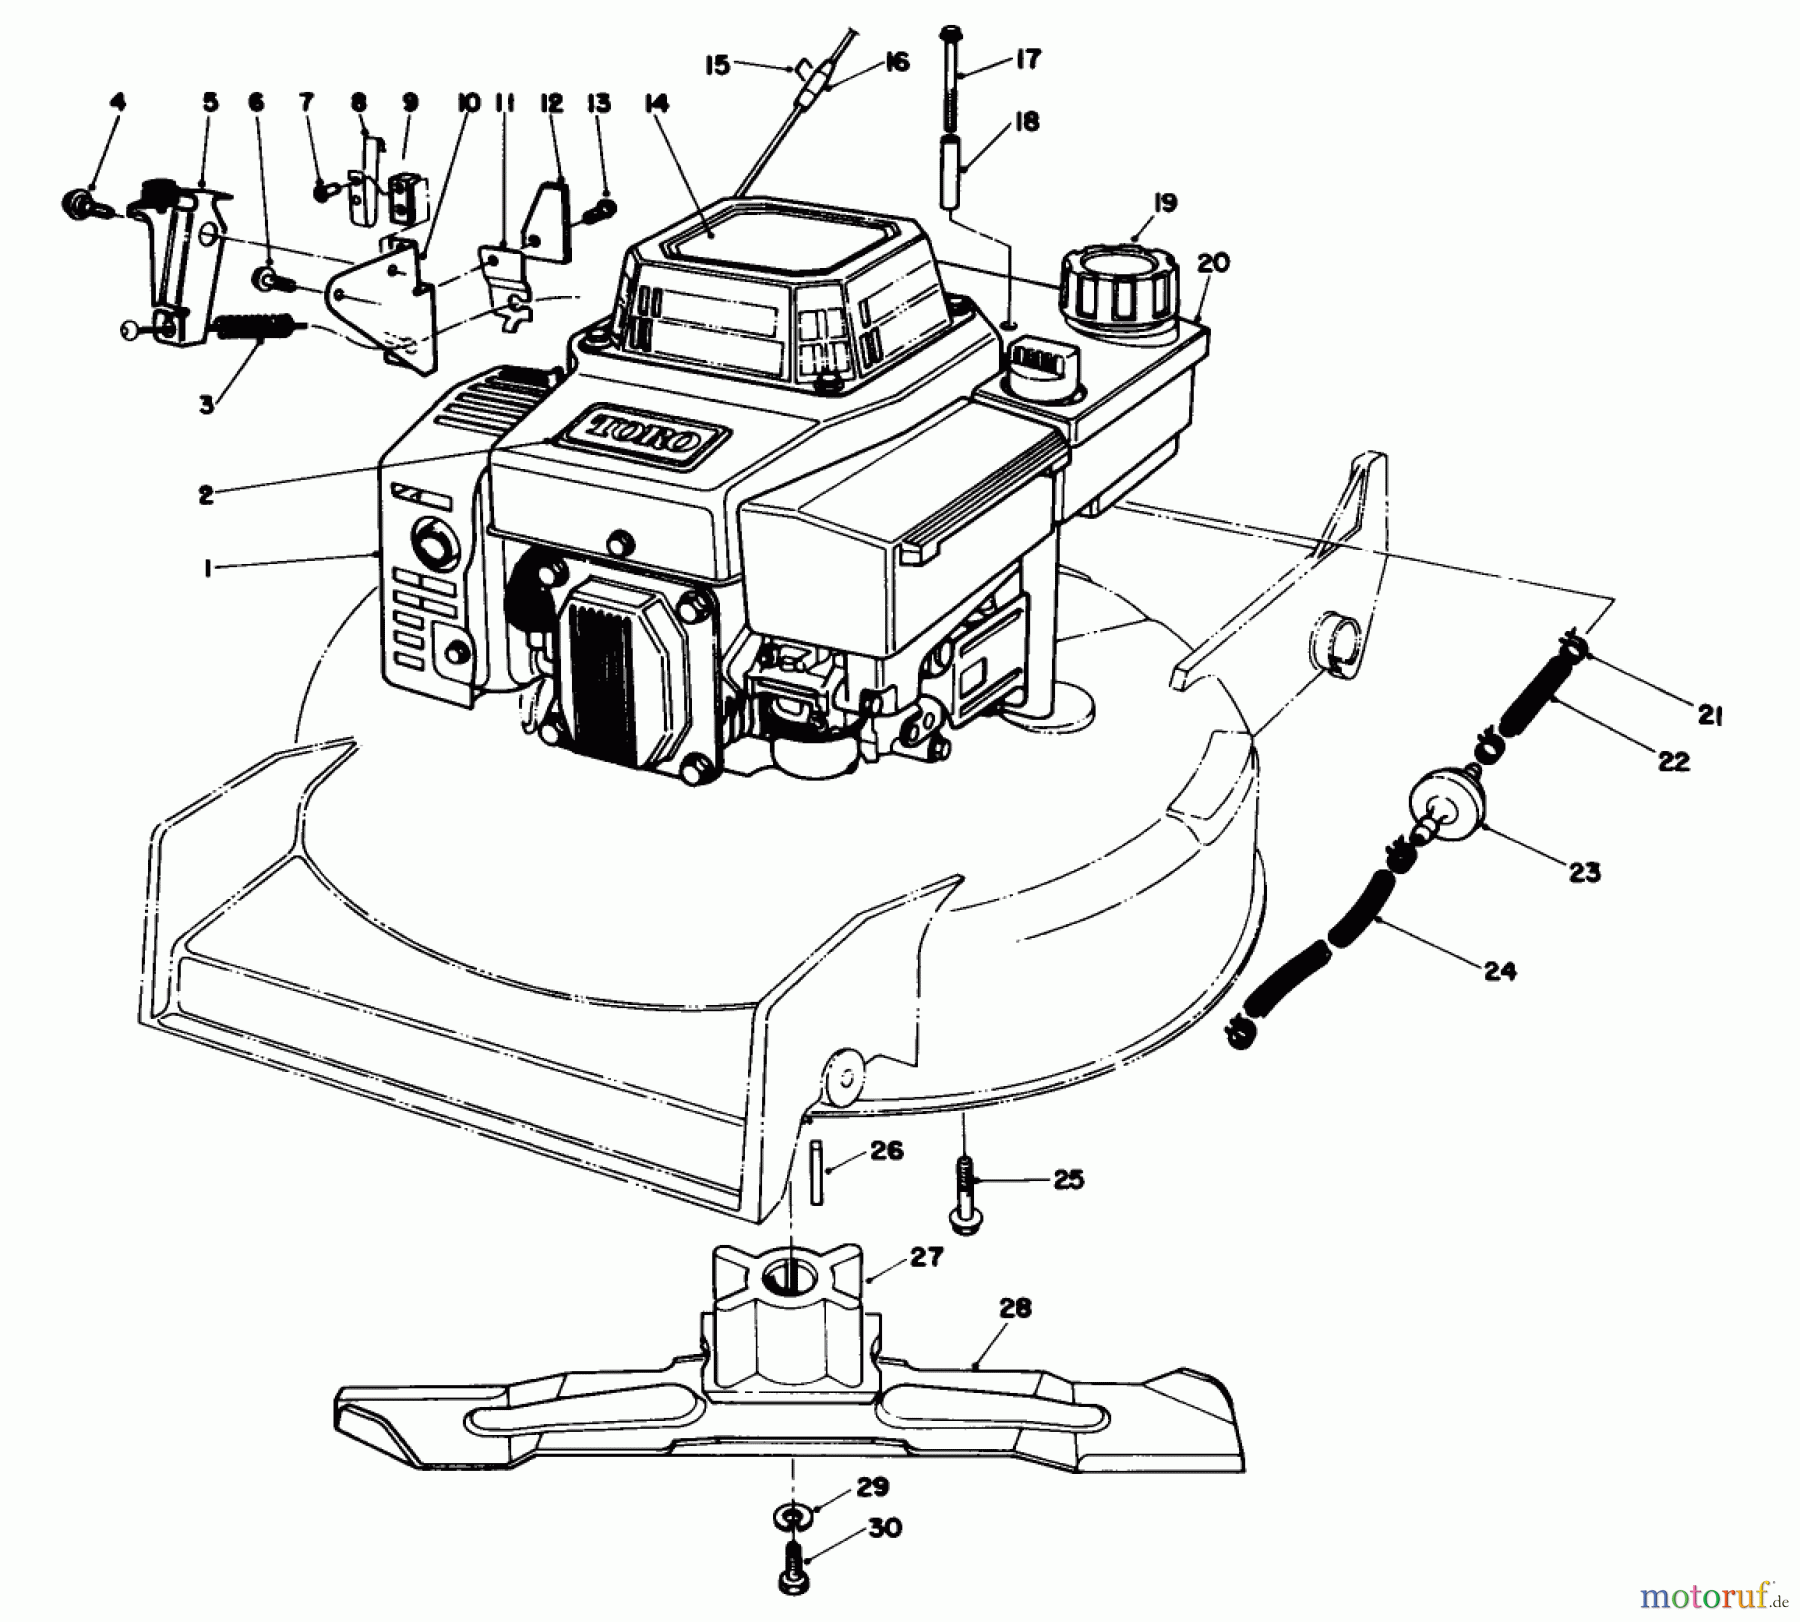  Toro Neu Mowers, Walk-Behind Seite 1 20526 - Toro Lawnmower, 1987 (7000001-7999999) ENGINE ASSEMBLY (MODEL NO. VMG6) #1